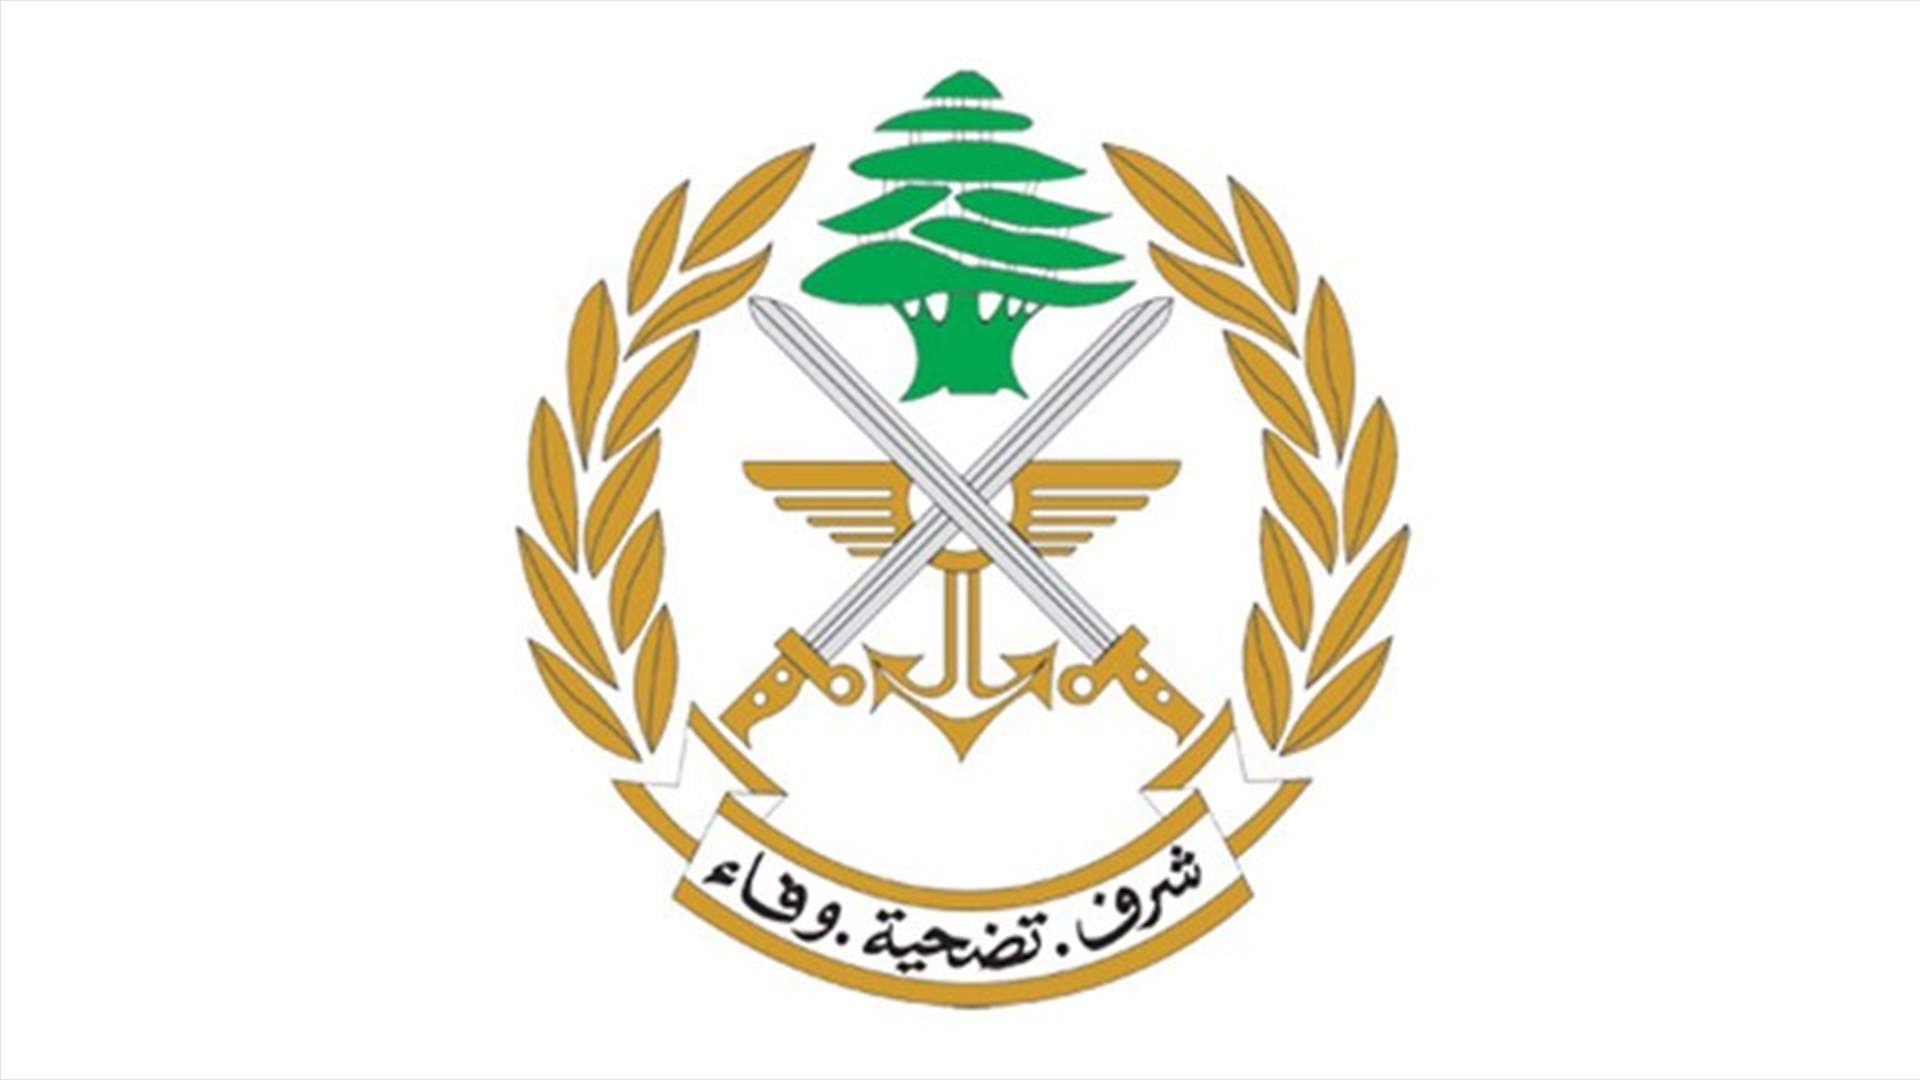 الجيش: توقيف مطلوبين في منطقتي بئر حسن والبوشرية